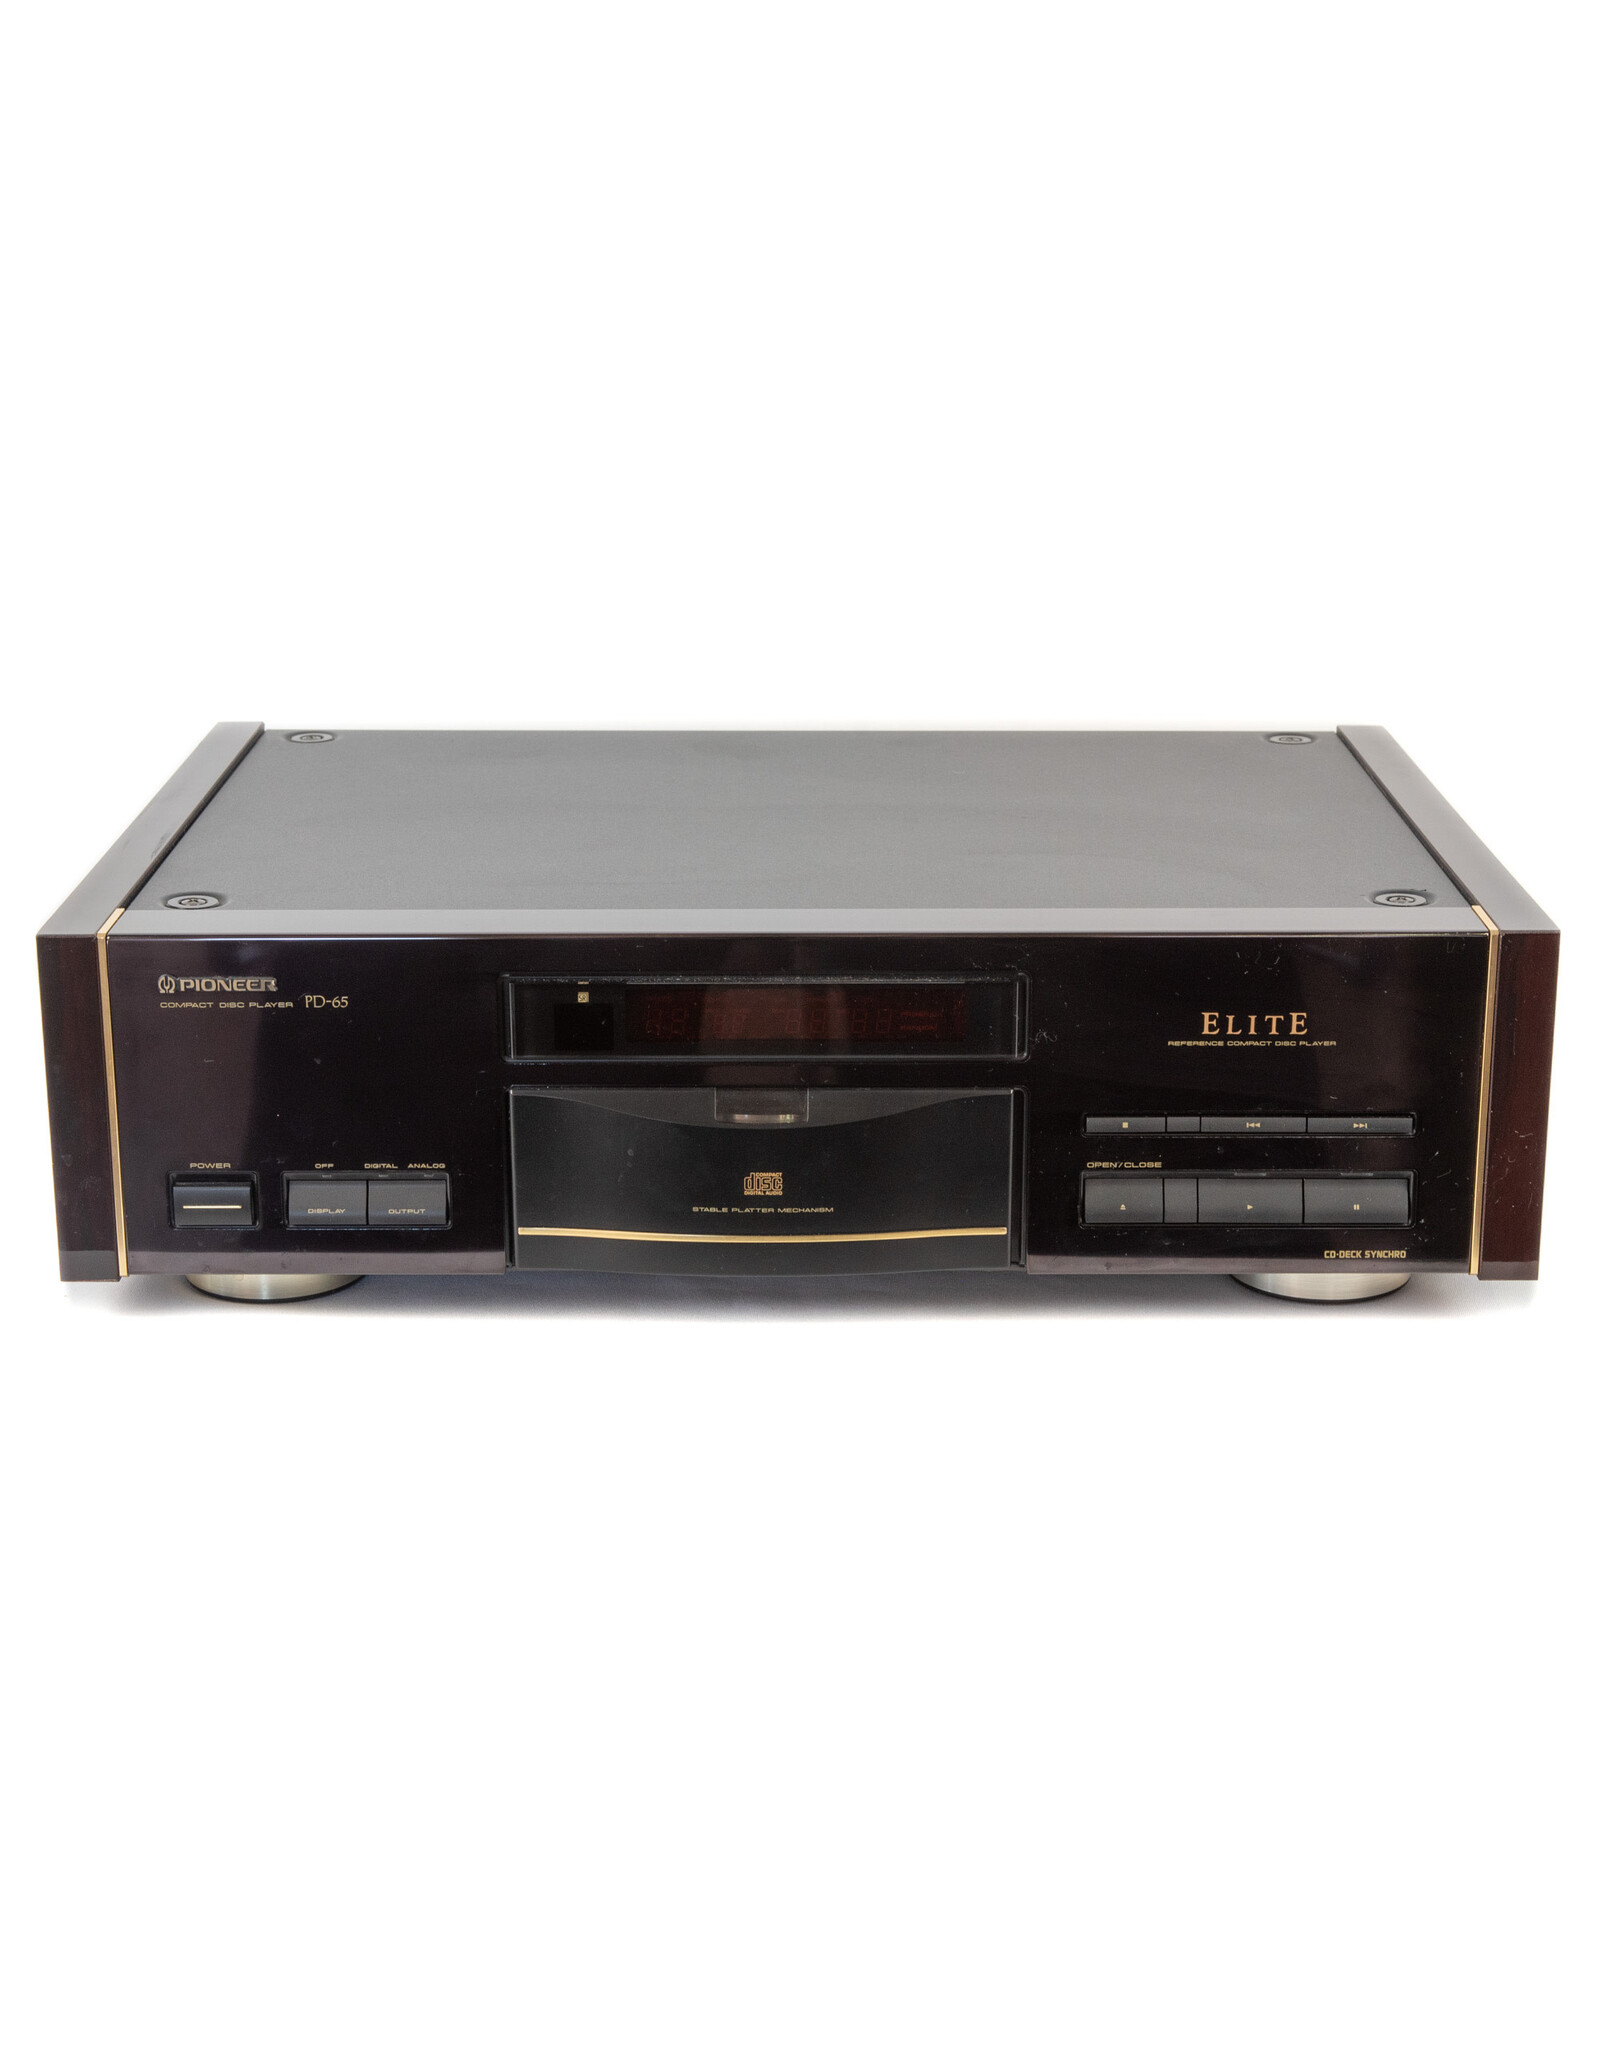 Pioneer Pioneer Elite PD-65 CD Player USED